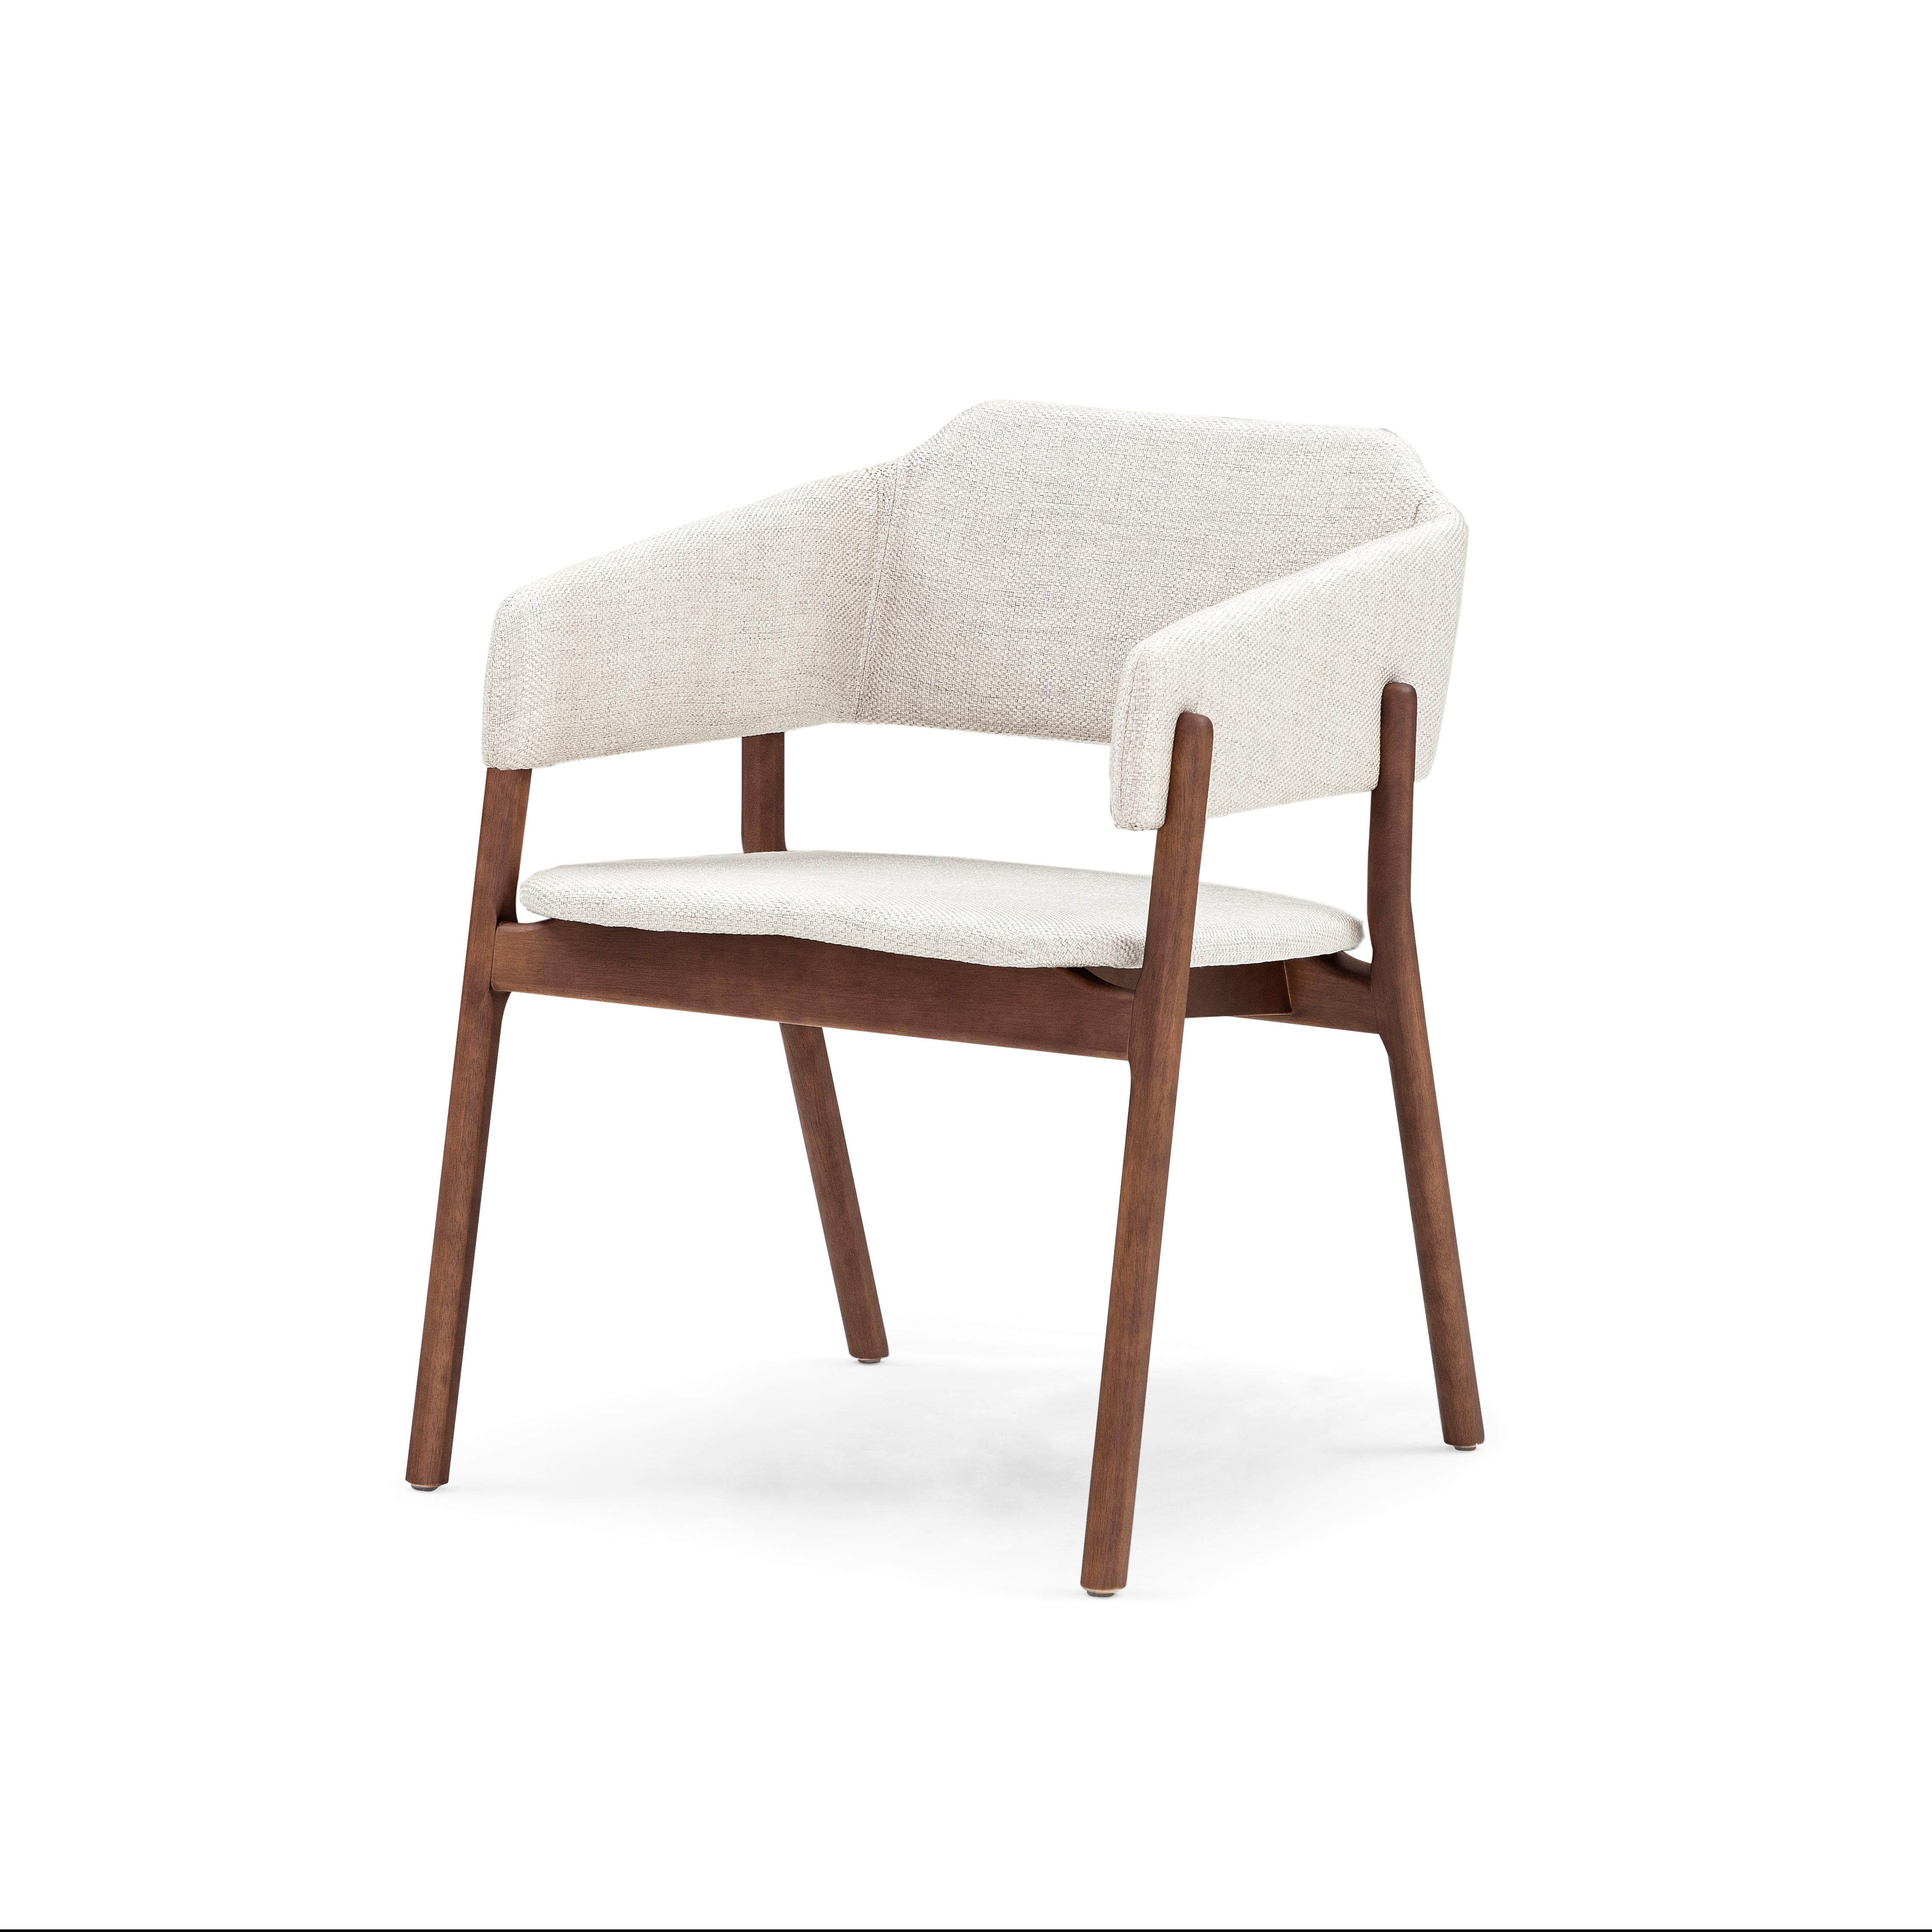 Unser Uultis-Team hat diesen schönen Stuzi-Esszimmerstuhl entworfen, der Ihren schönen Esszimmertisch mit einem cremefarbenen Stoff und einer Walnussholzoberfläche schmückt. Dieser Stuhl hat ein wunderschönes, einfaches, aber elegantes Design, das